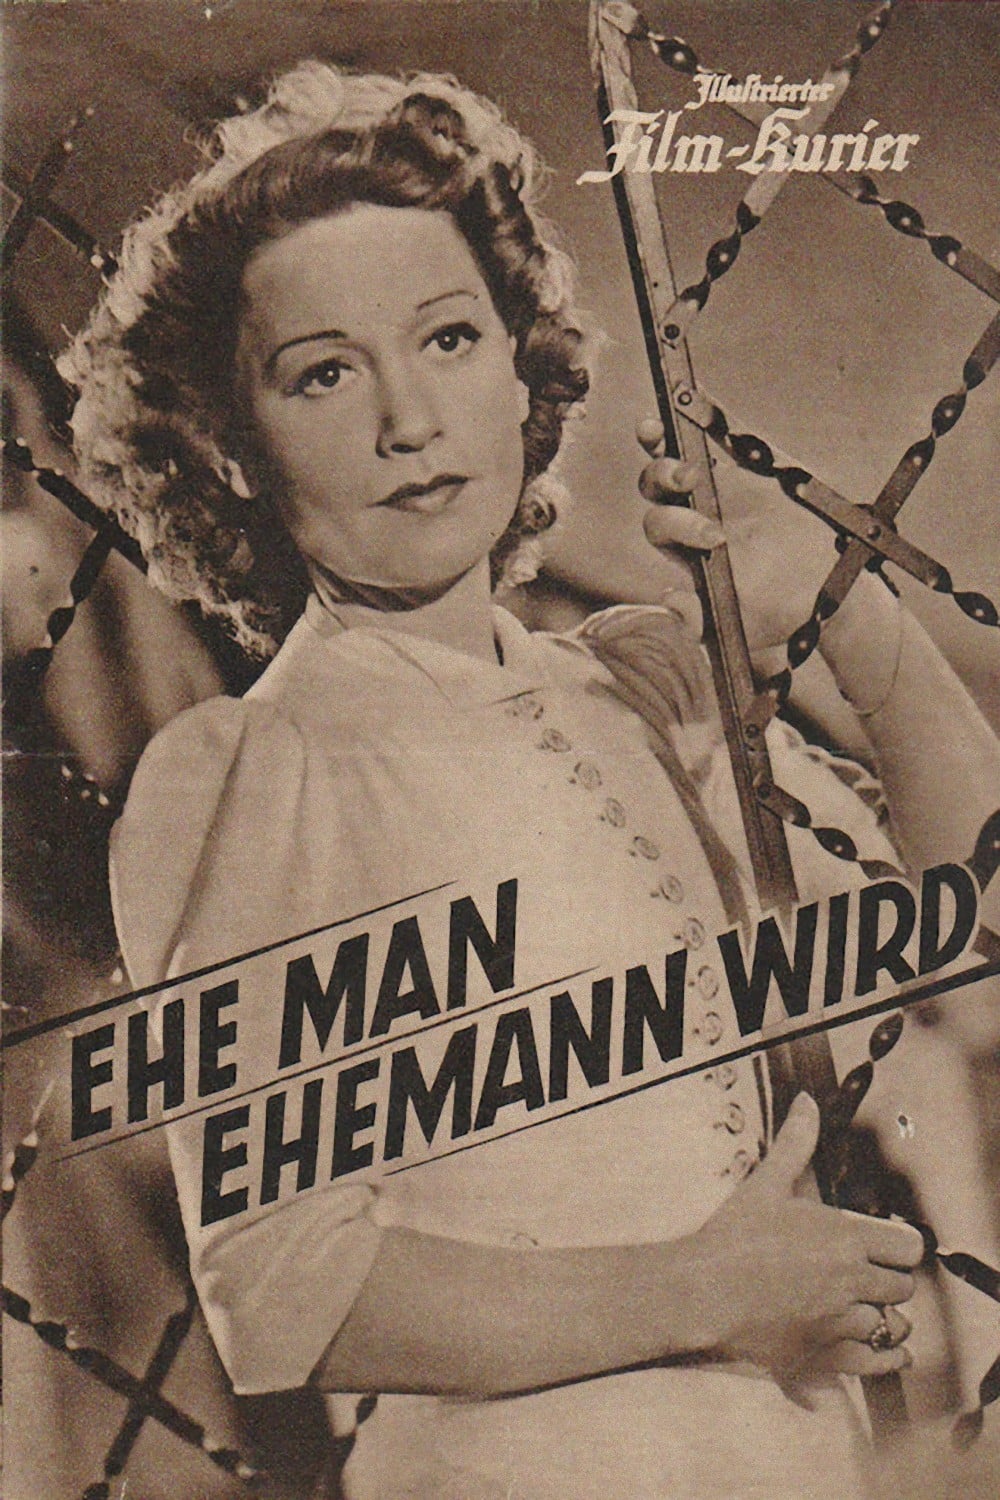 Ehe man Ehemann wird (1941)